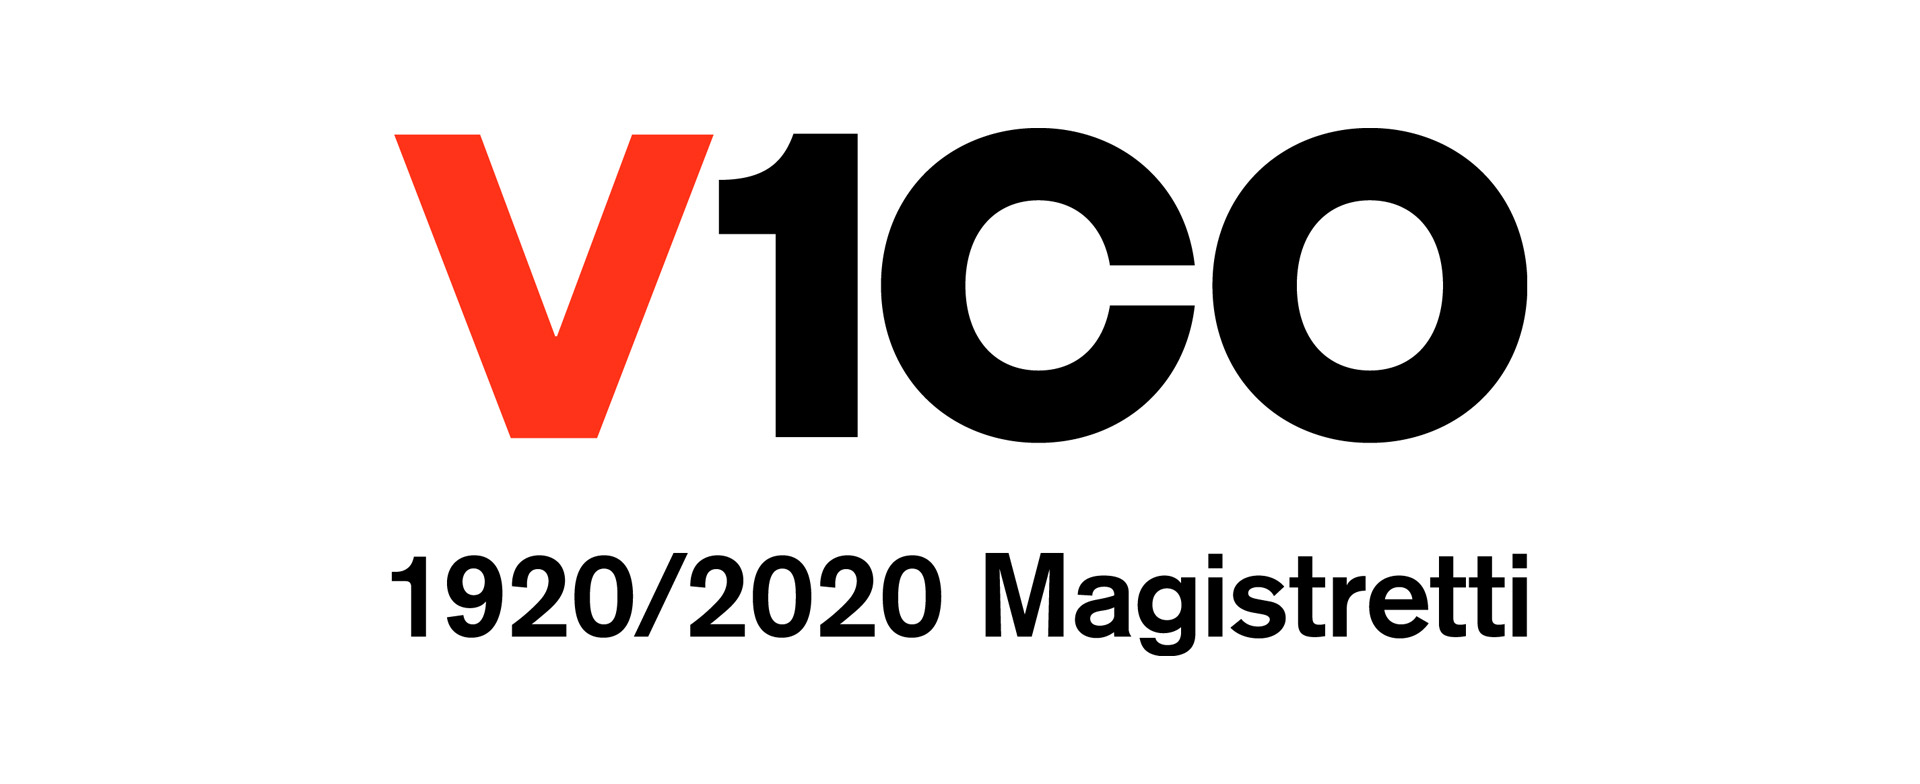 100 anni di Vico Magistretti